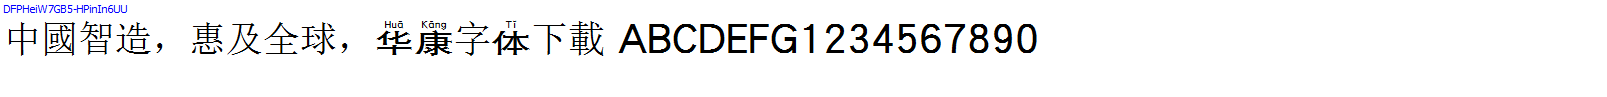 華康字體DFPHeiW7GB5-HPinIn6UU.TTF